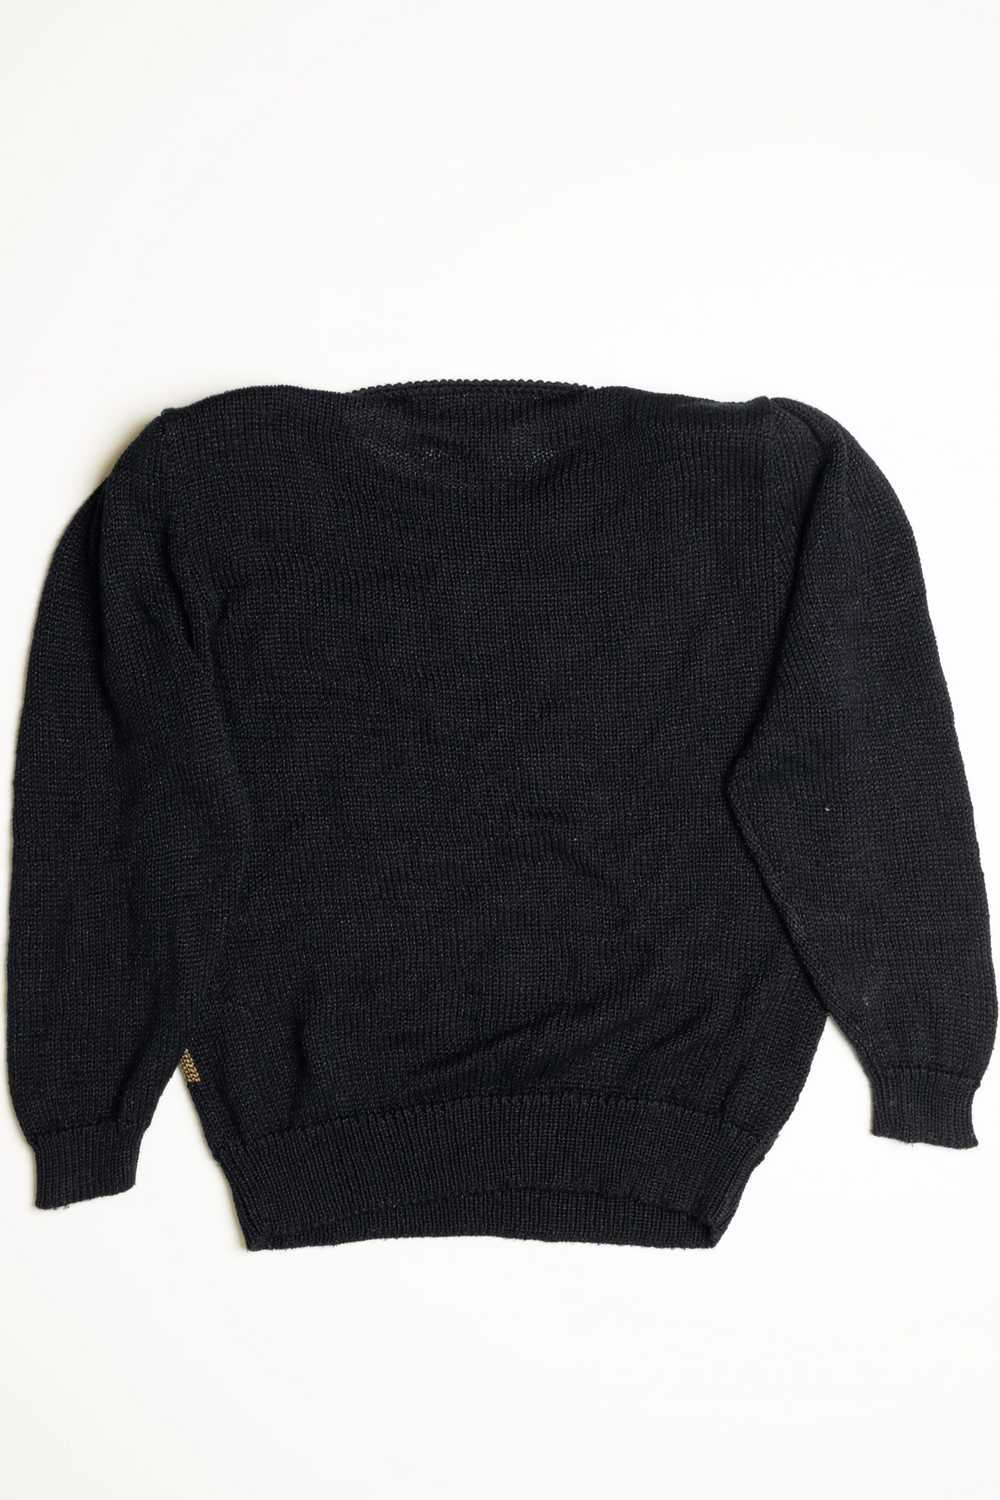 Franco Valeri 80s Sweater - image 3